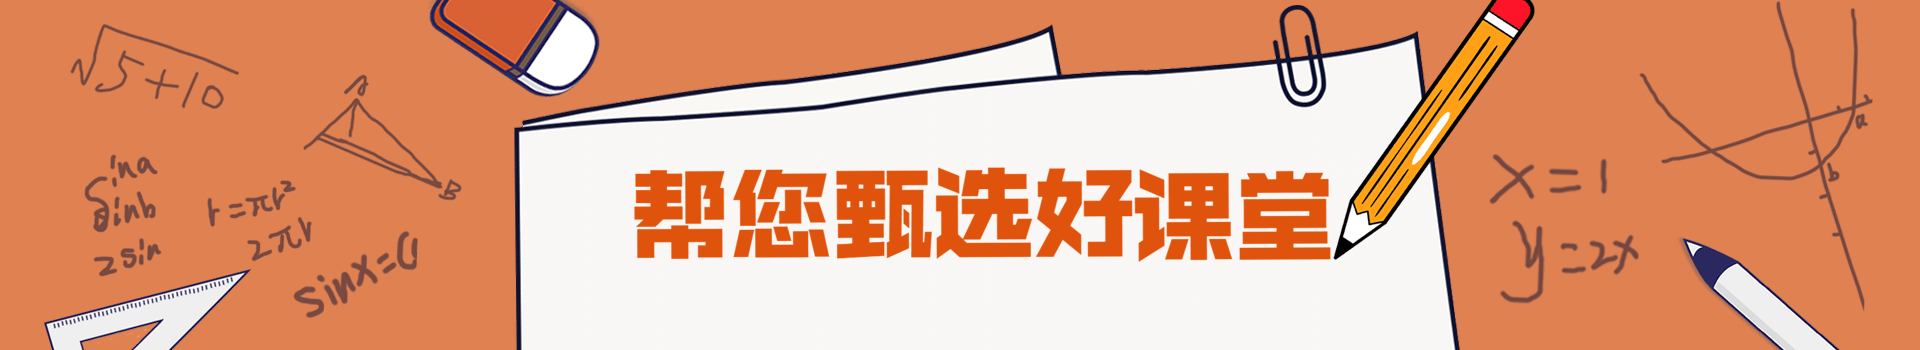 北京动漫设计培训学校